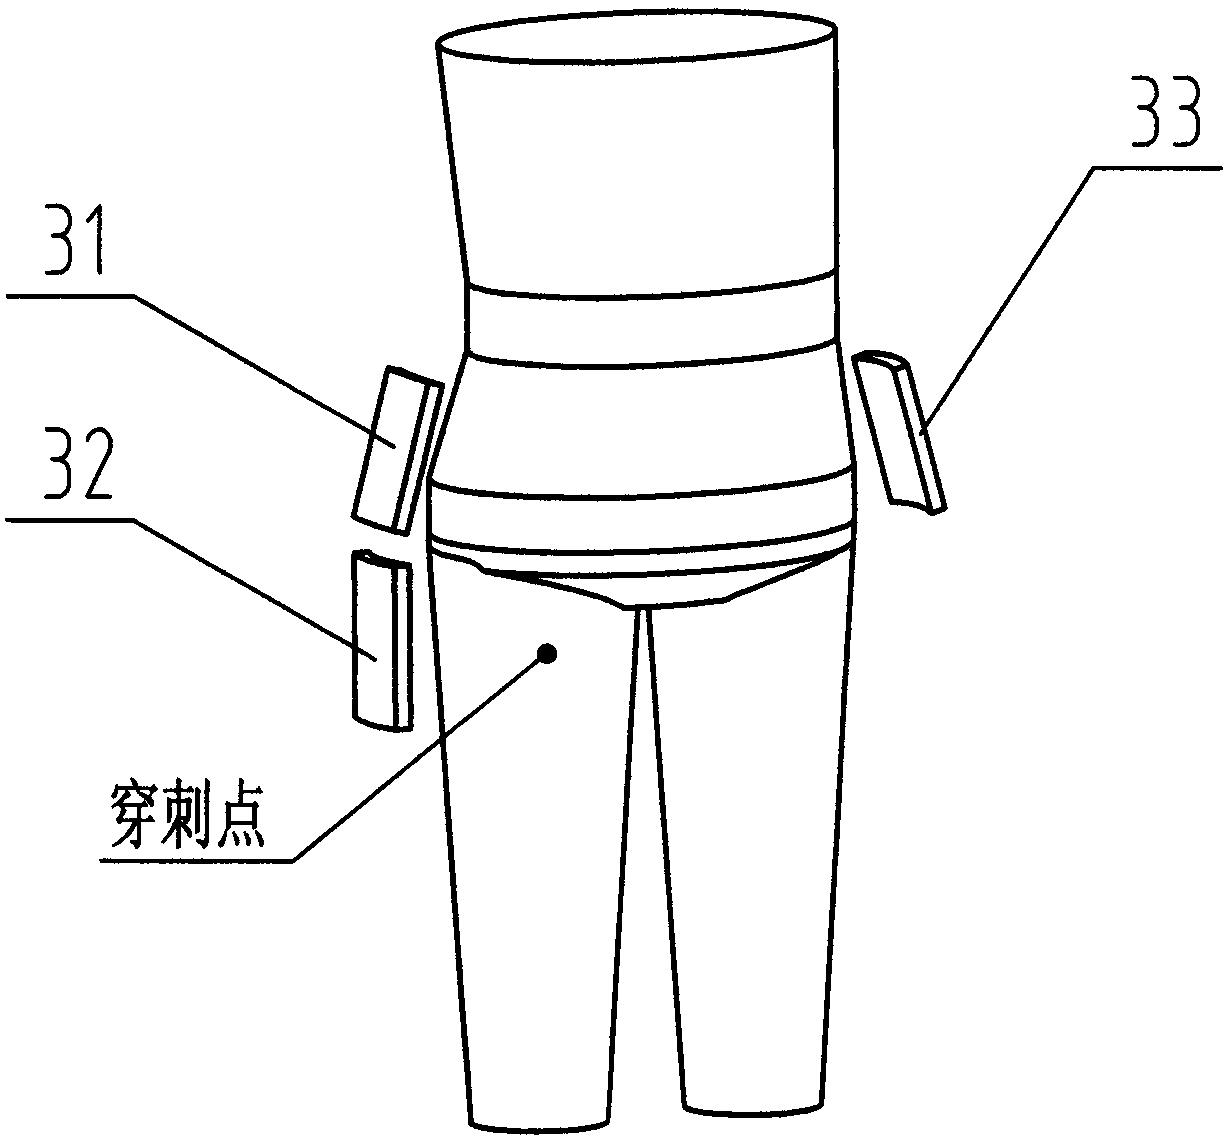 Auxiliary bandaging device for elastic bandage